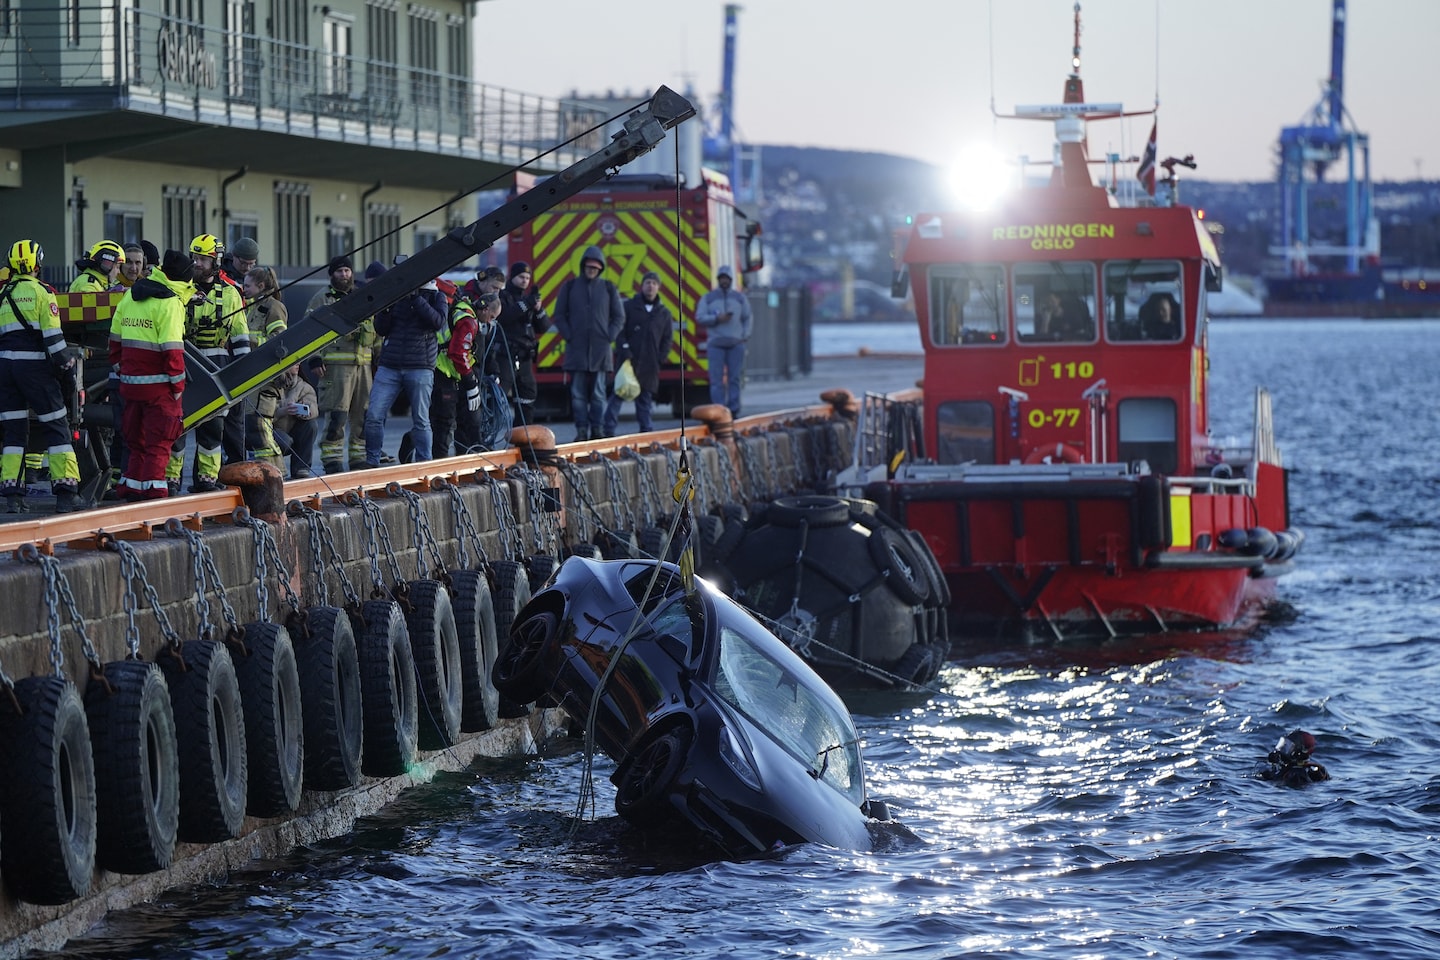 Un sauna flottant sauve les passagers d'une Tesla après l'accident d'une voiture dans un fjord d'Oslo - 3